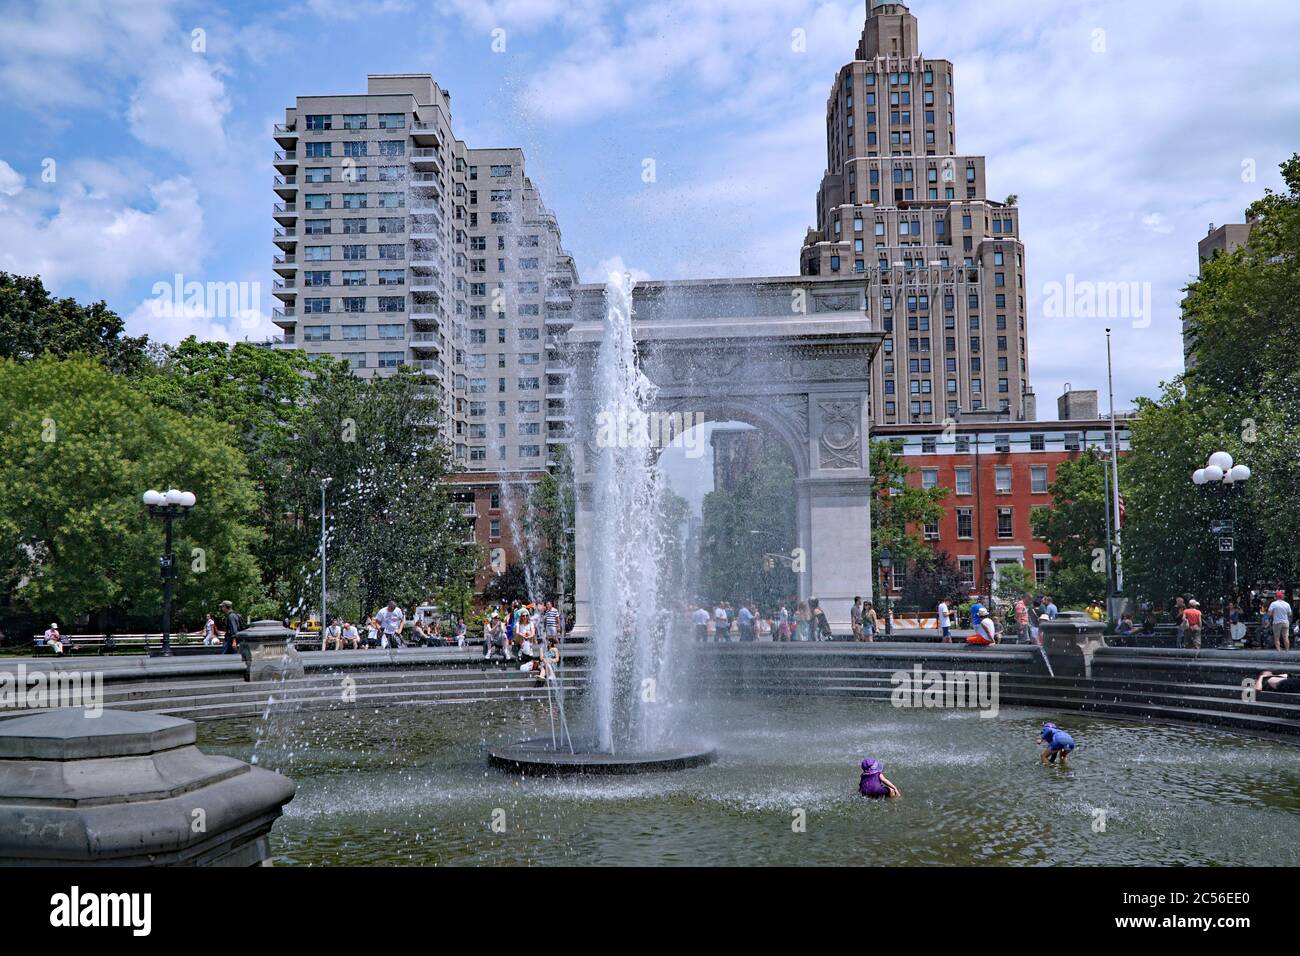 New York, NY - 10. Juli 2017: Der Brunnen im Washington Square Park in Lower Manhattan ist ein beliebter Ort, um sich im Sommer abzukühlen. Stockfoto